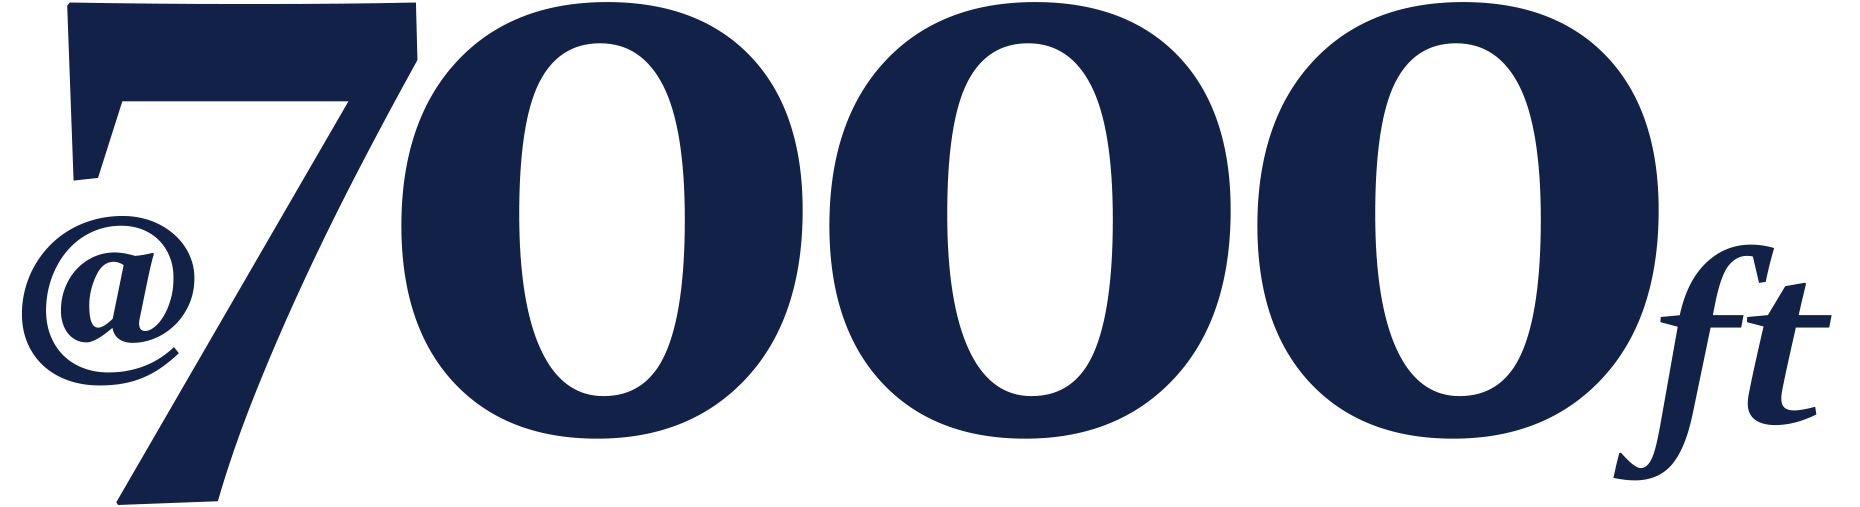 700ft_logo